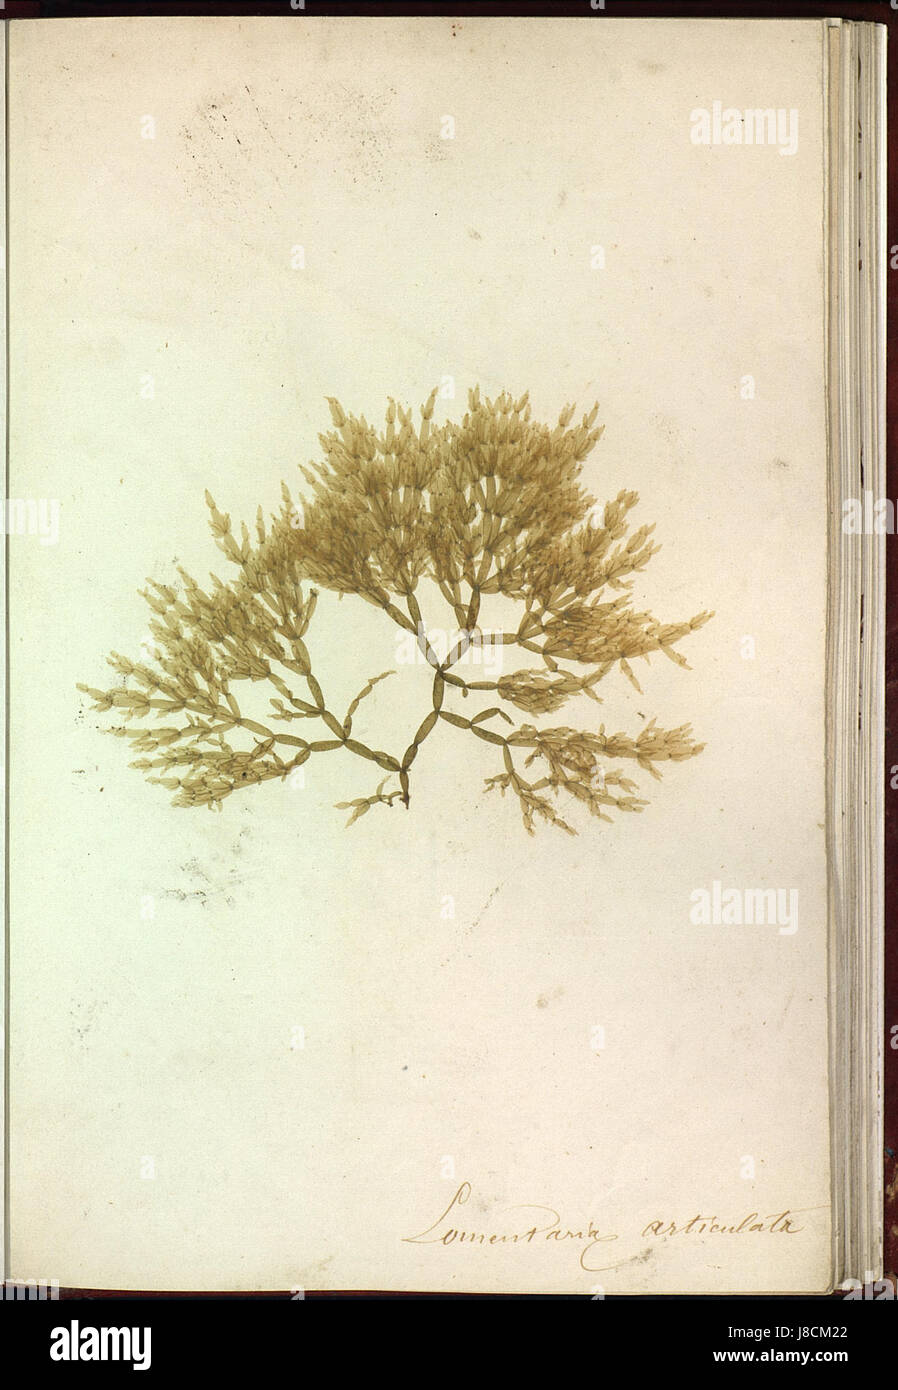 Lomentaria articulata Brest Album plantes marines naturelles Stock Photo